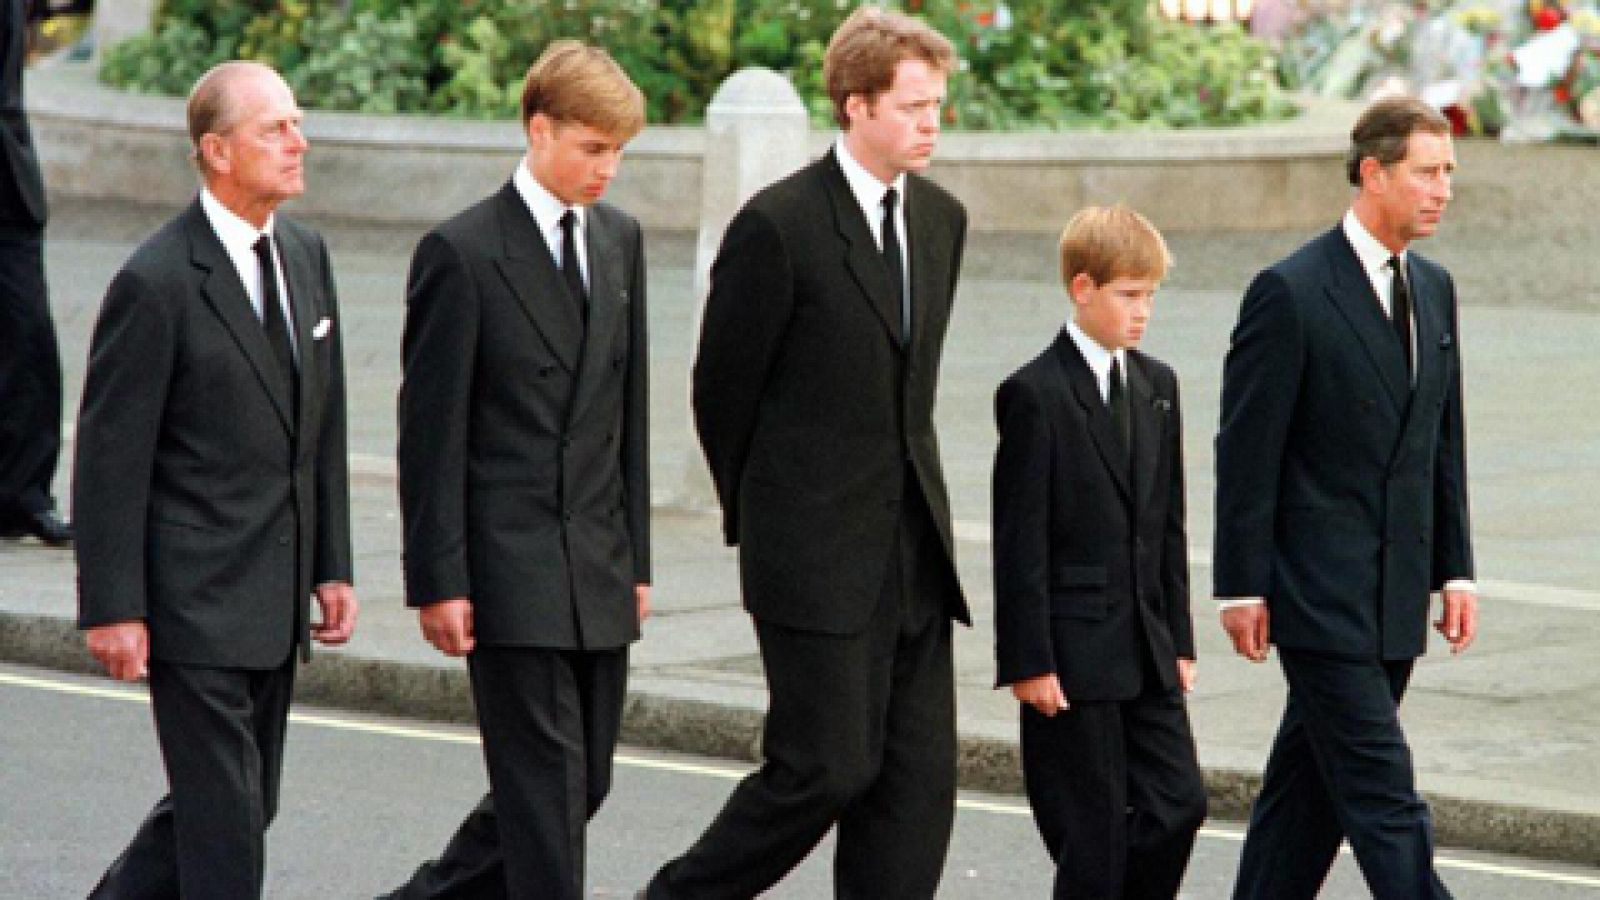 Fue Informe - Adiós, Diana (Funeral de Diana de Gales) - Ver ahora 